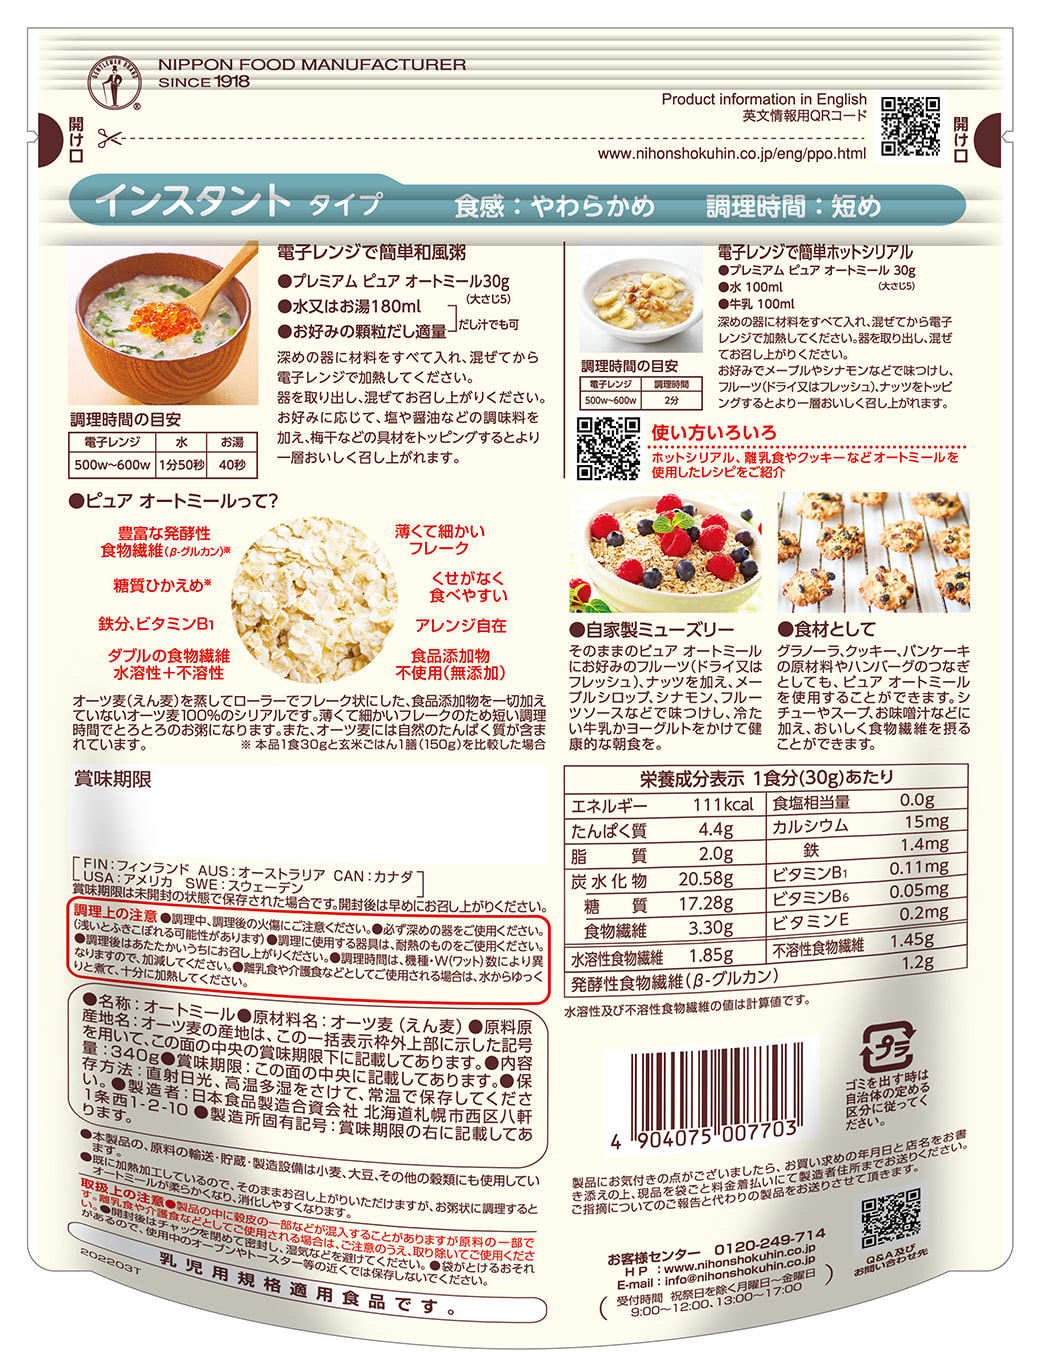 日食 プレミアム ピュアオートミール 日本食品製造合資会社